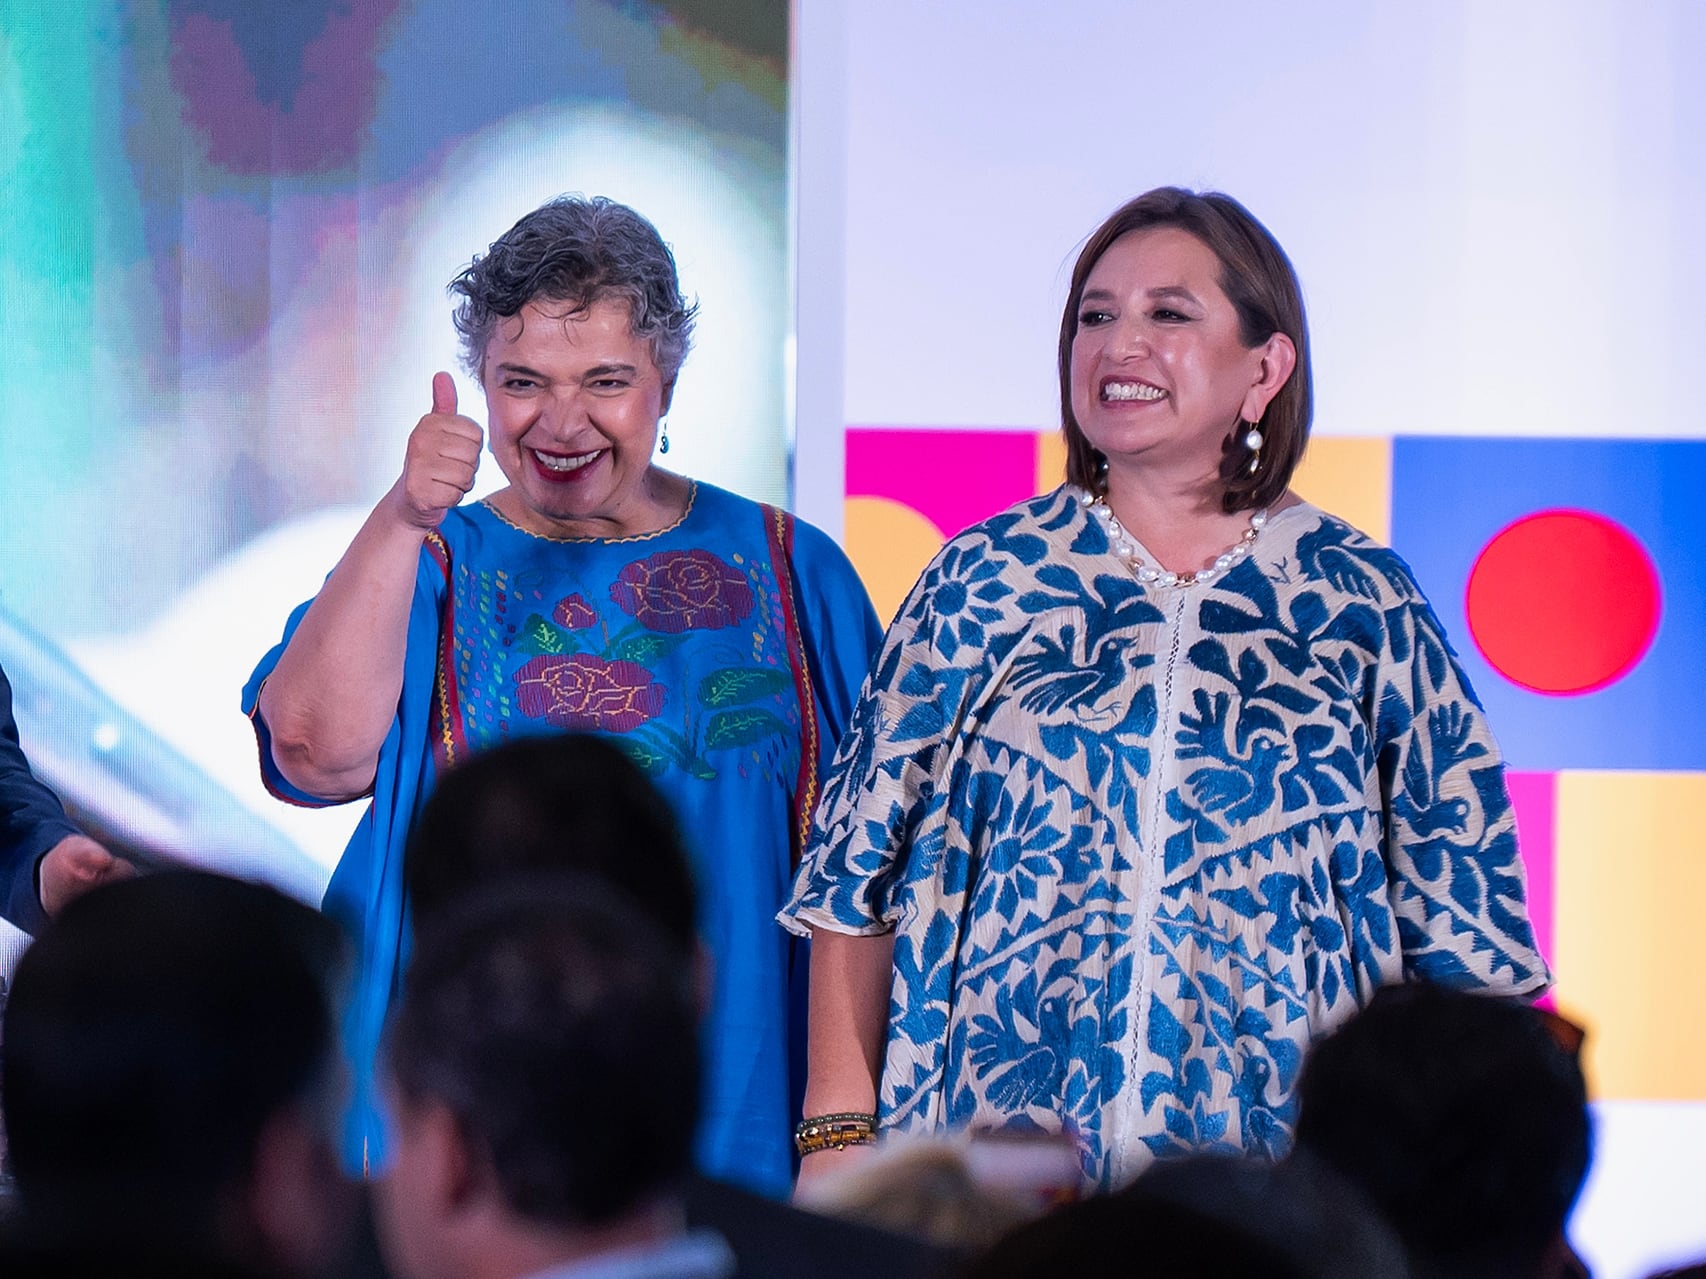 Tanto Xóchitl como Beatrix Paredes llevaron prendas con bordados tradicionales antes de confirmarse que Gálvez sería la precandidata del Frente Amplio.